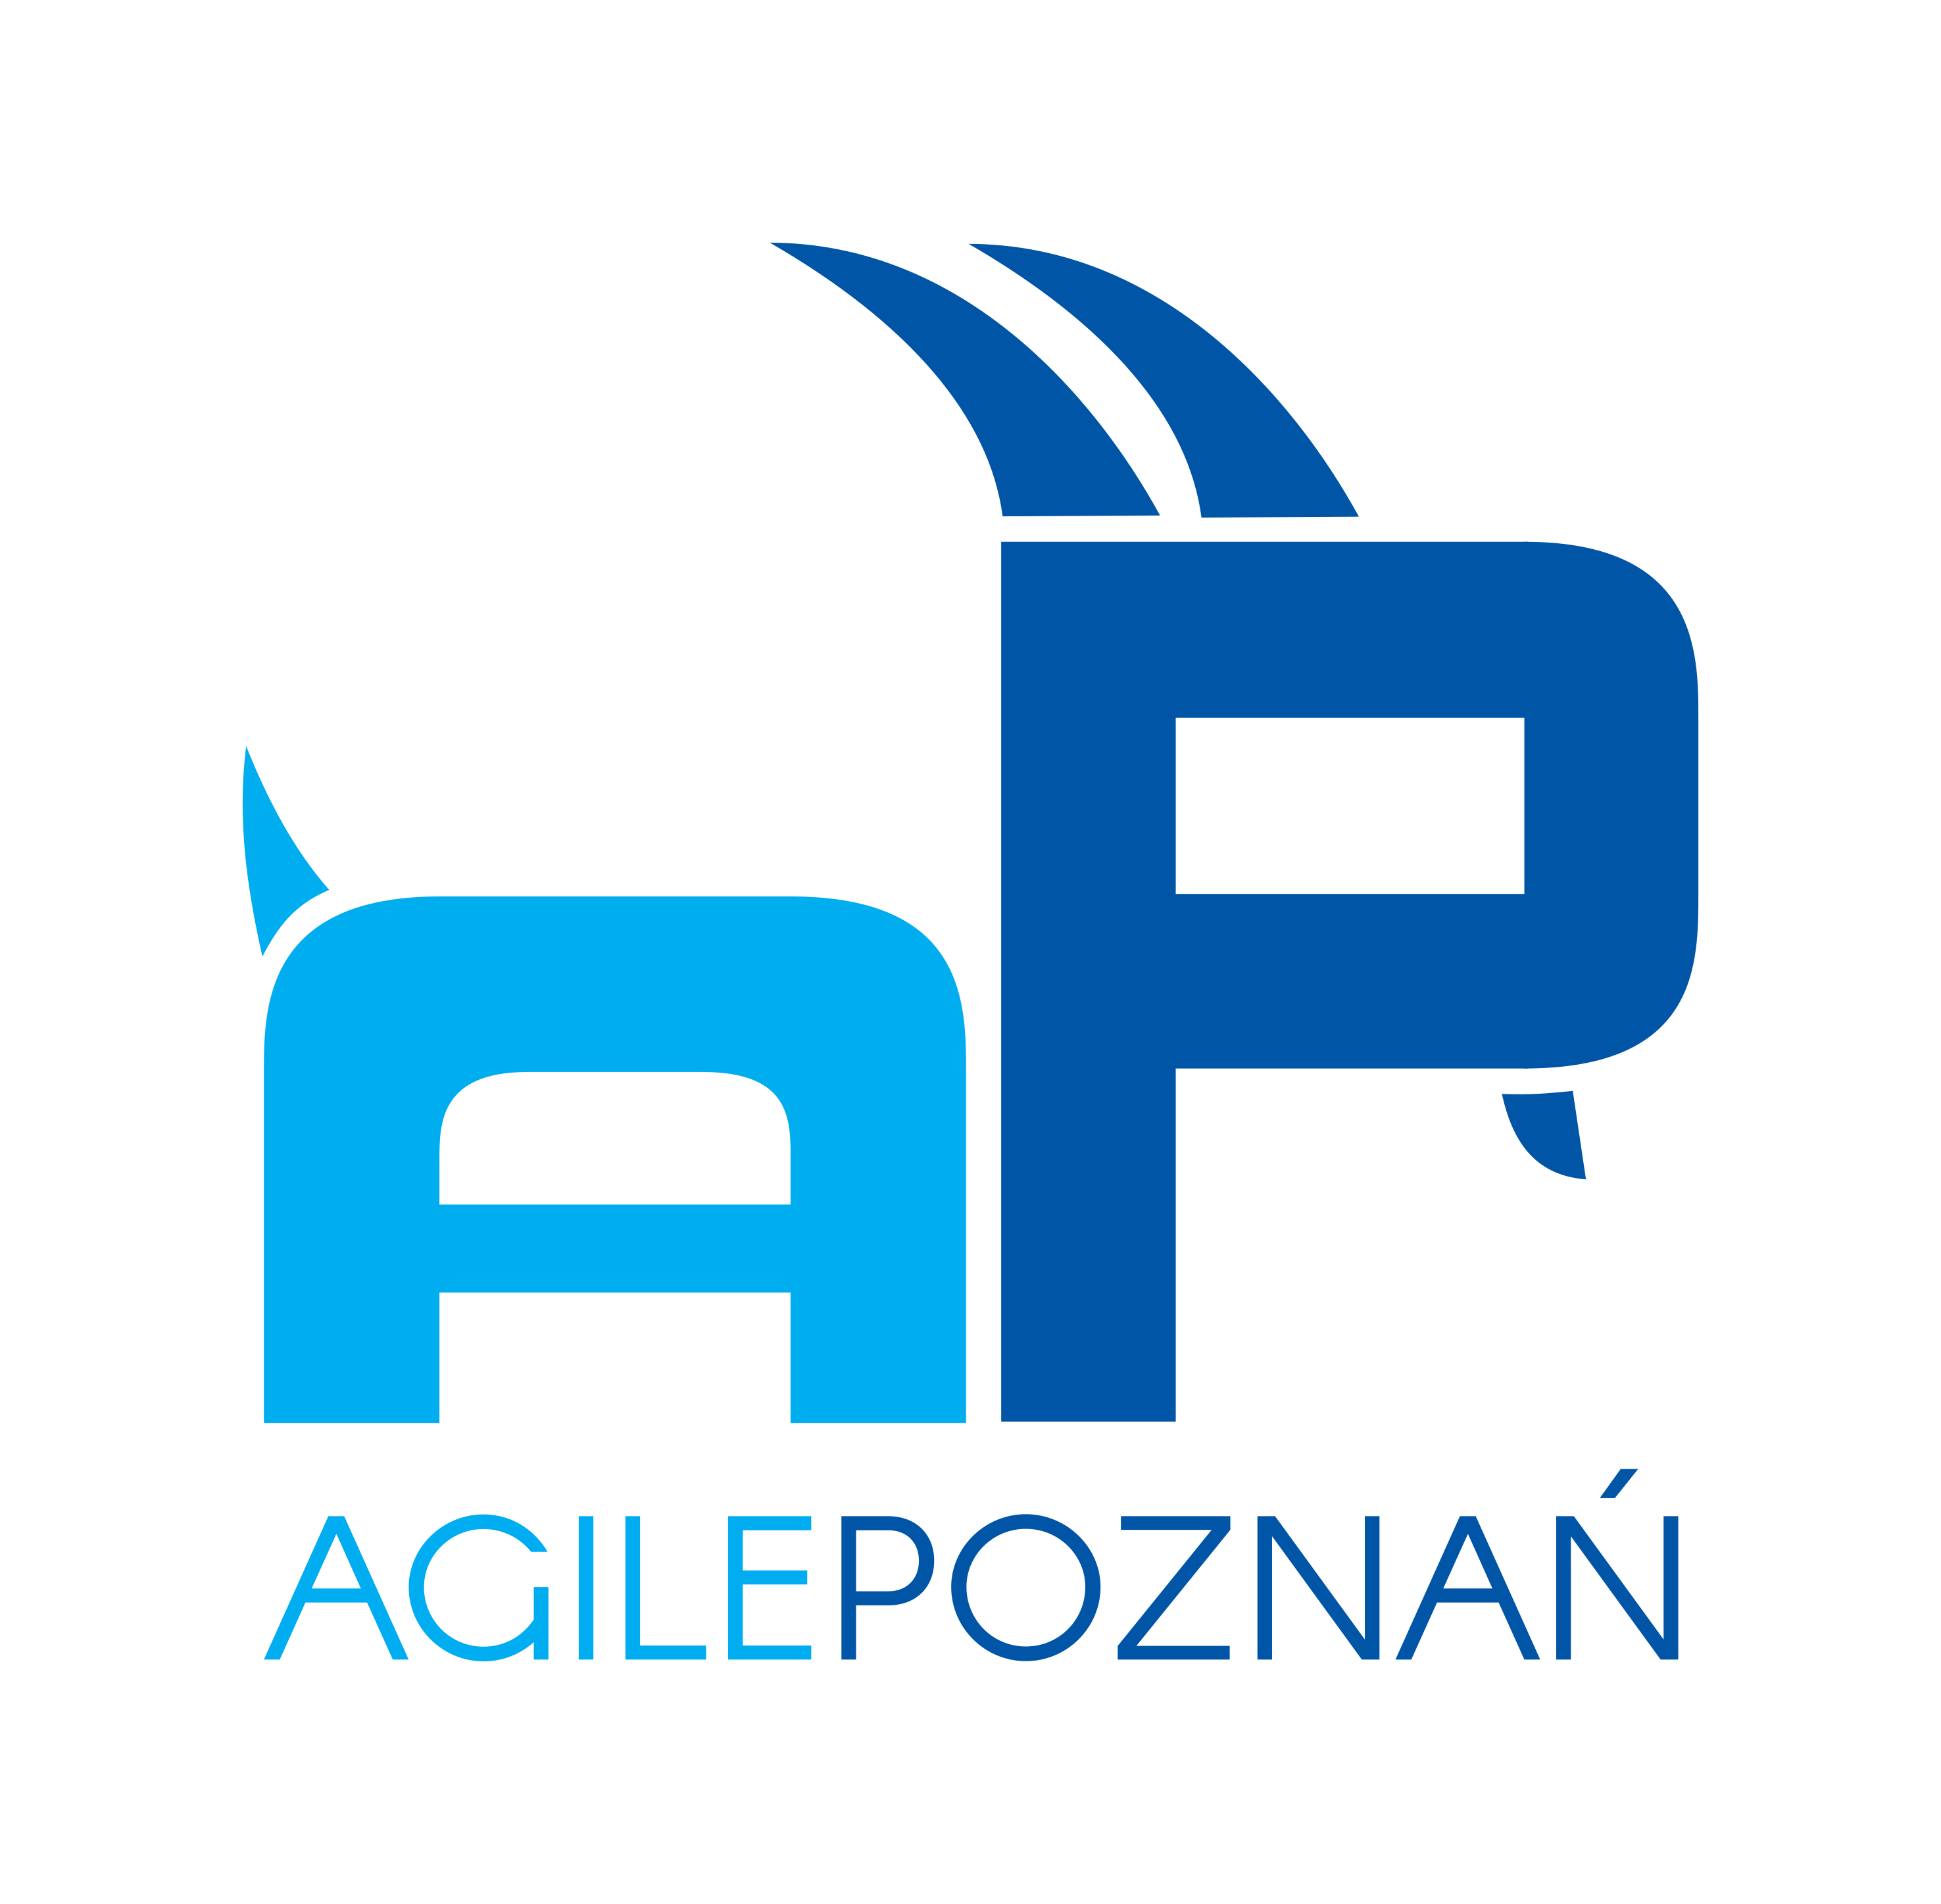 Agile Poznań